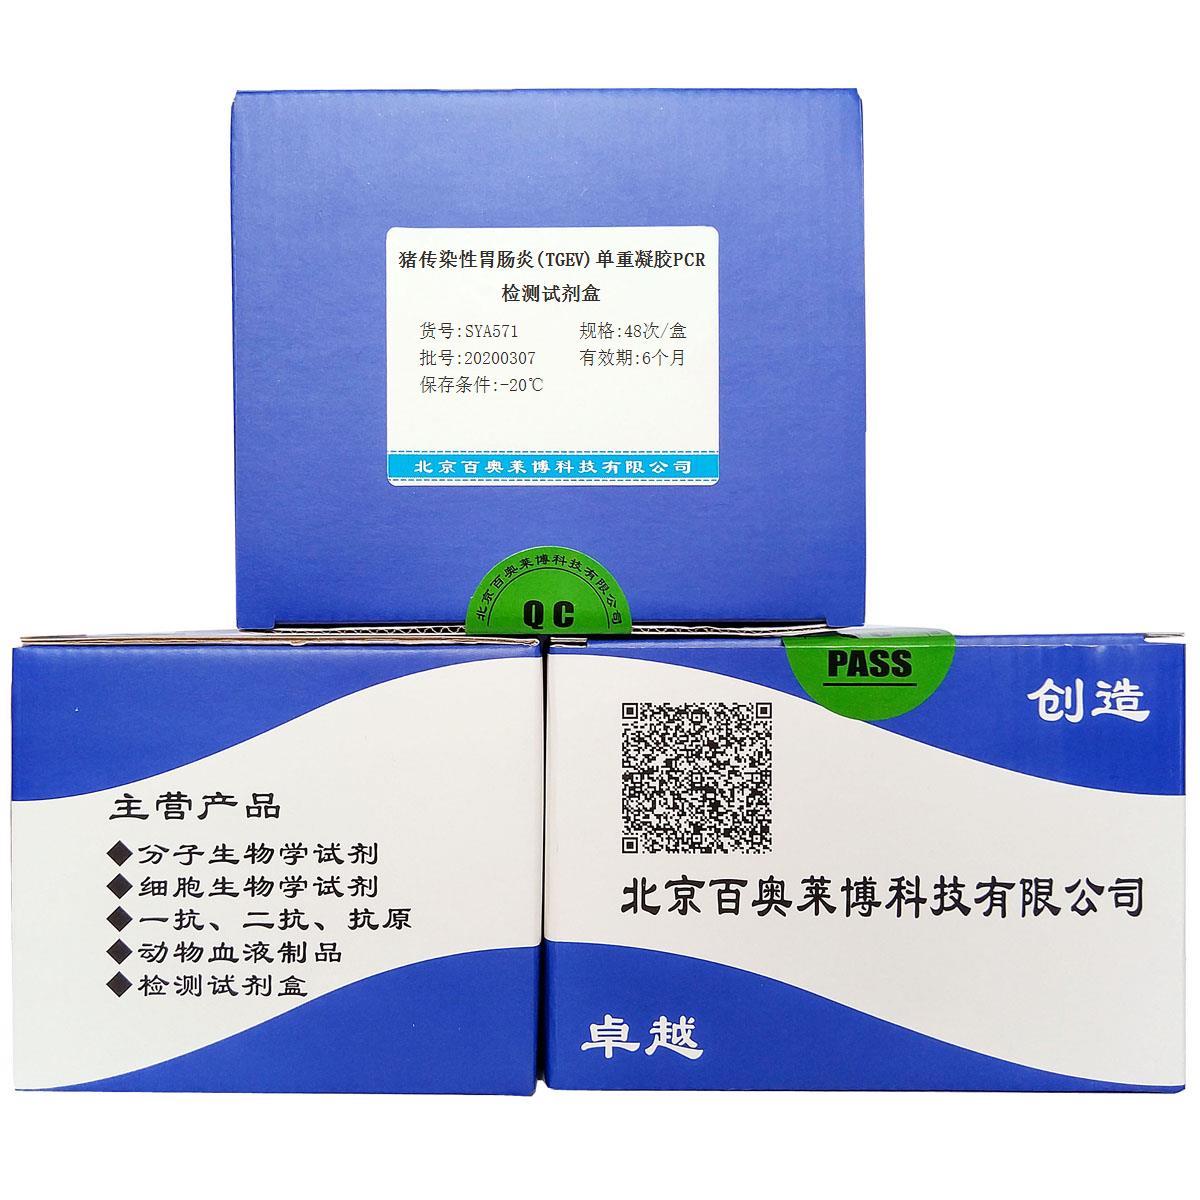 猪传染性胃肠炎(TGEV)单重凝胶PCR检测试剂盒